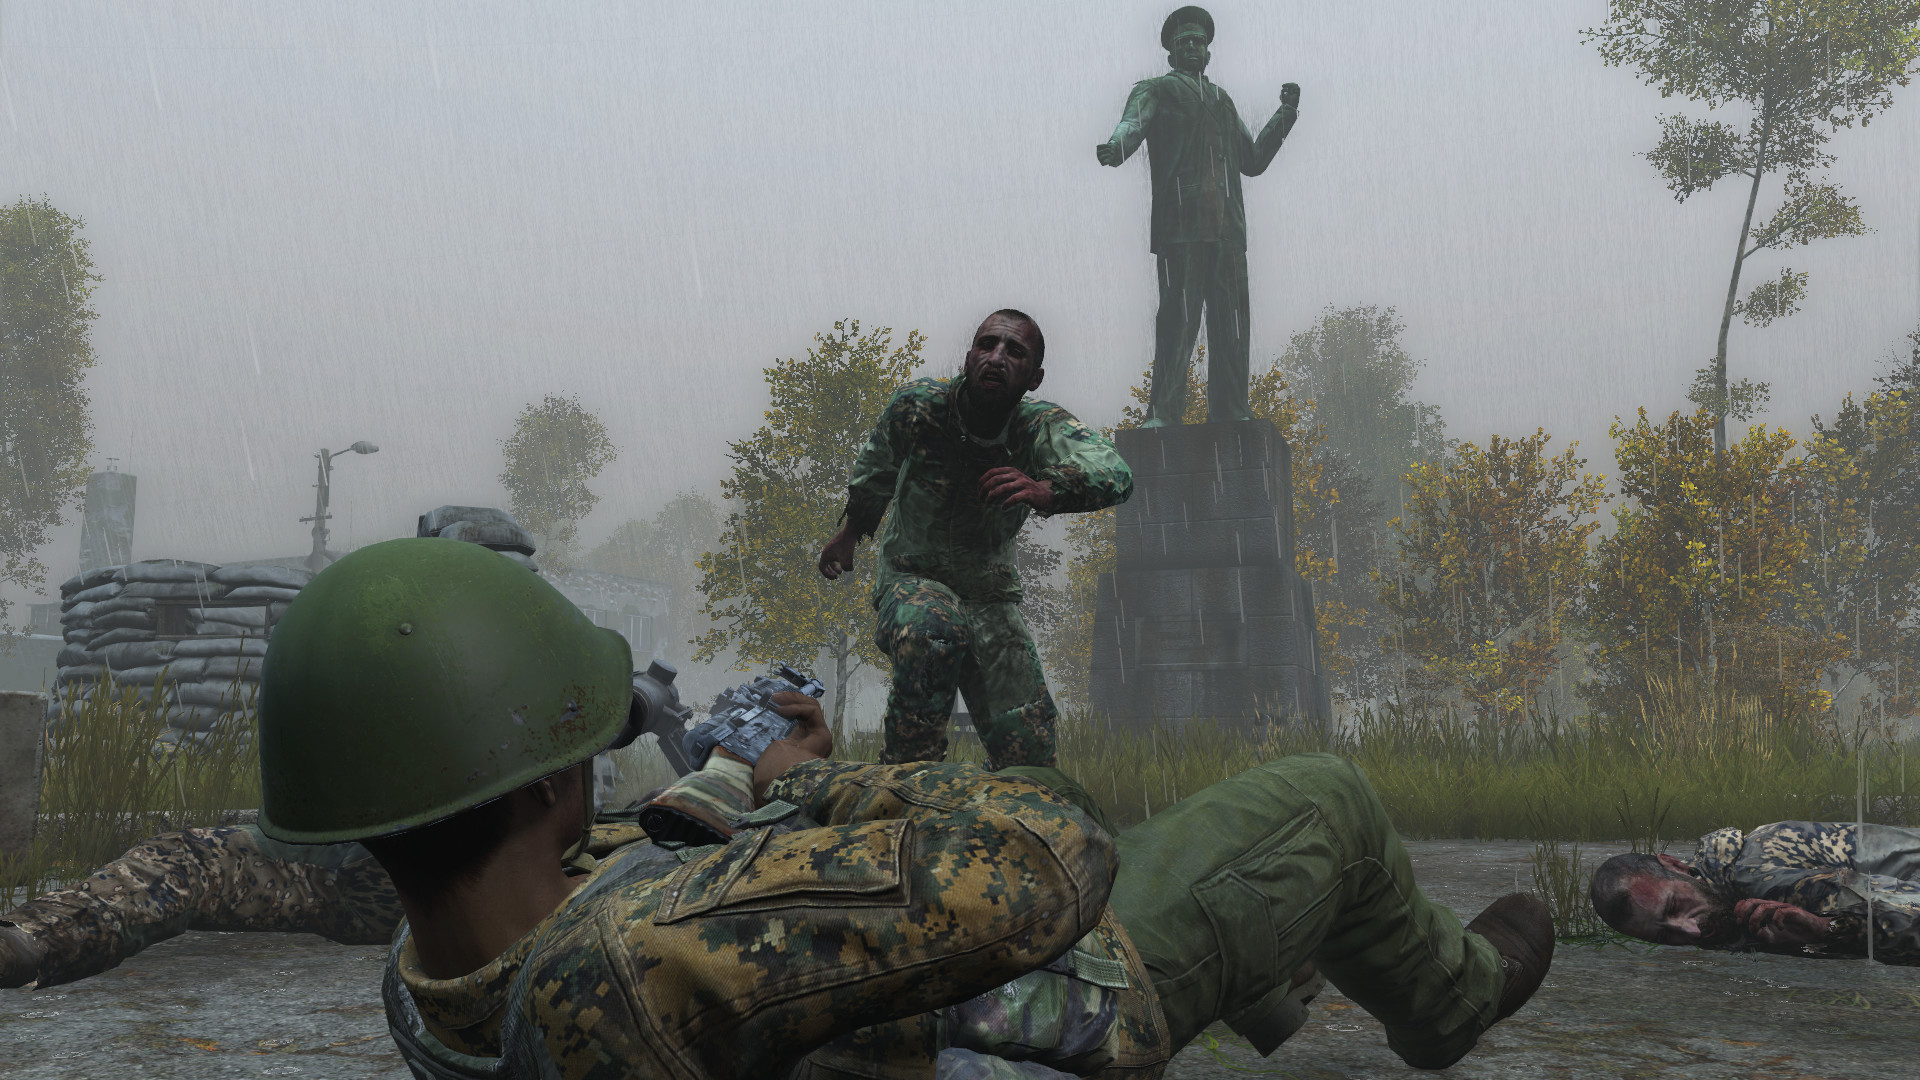 game bertahan hidup terbaik: seorang tentara tergeletak di tanah menembak zombie